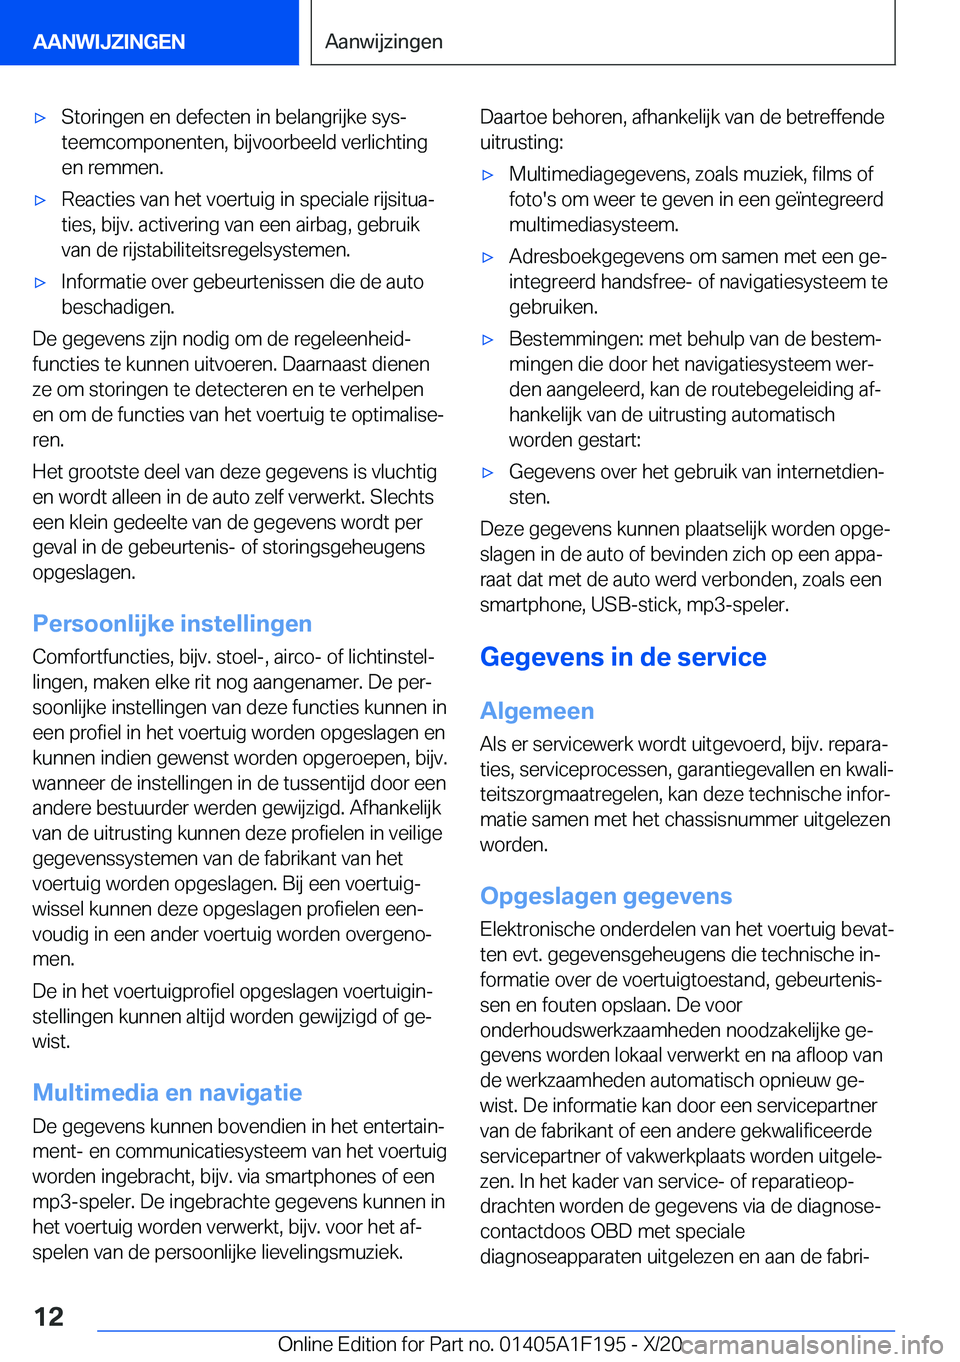 BMW M5 2021  Instructieboekjes (in Dutch) 'x�S�t�o�r�i�n�g�e�n��e�n��d�e�f�e�c�t�e�n��i�n��b�e�l�a�n�g�r�i�j�k�e��s�y�sj
�t�e�e�m�c�o�m�p�o�n�e�n�t�e�n�,��b�i�j�v�o�o�r�b�e�e�l�d��v�e�r�l�i�c�h�t�i�n�g
�e�n��r�e�m�m�e�n�.'x�R